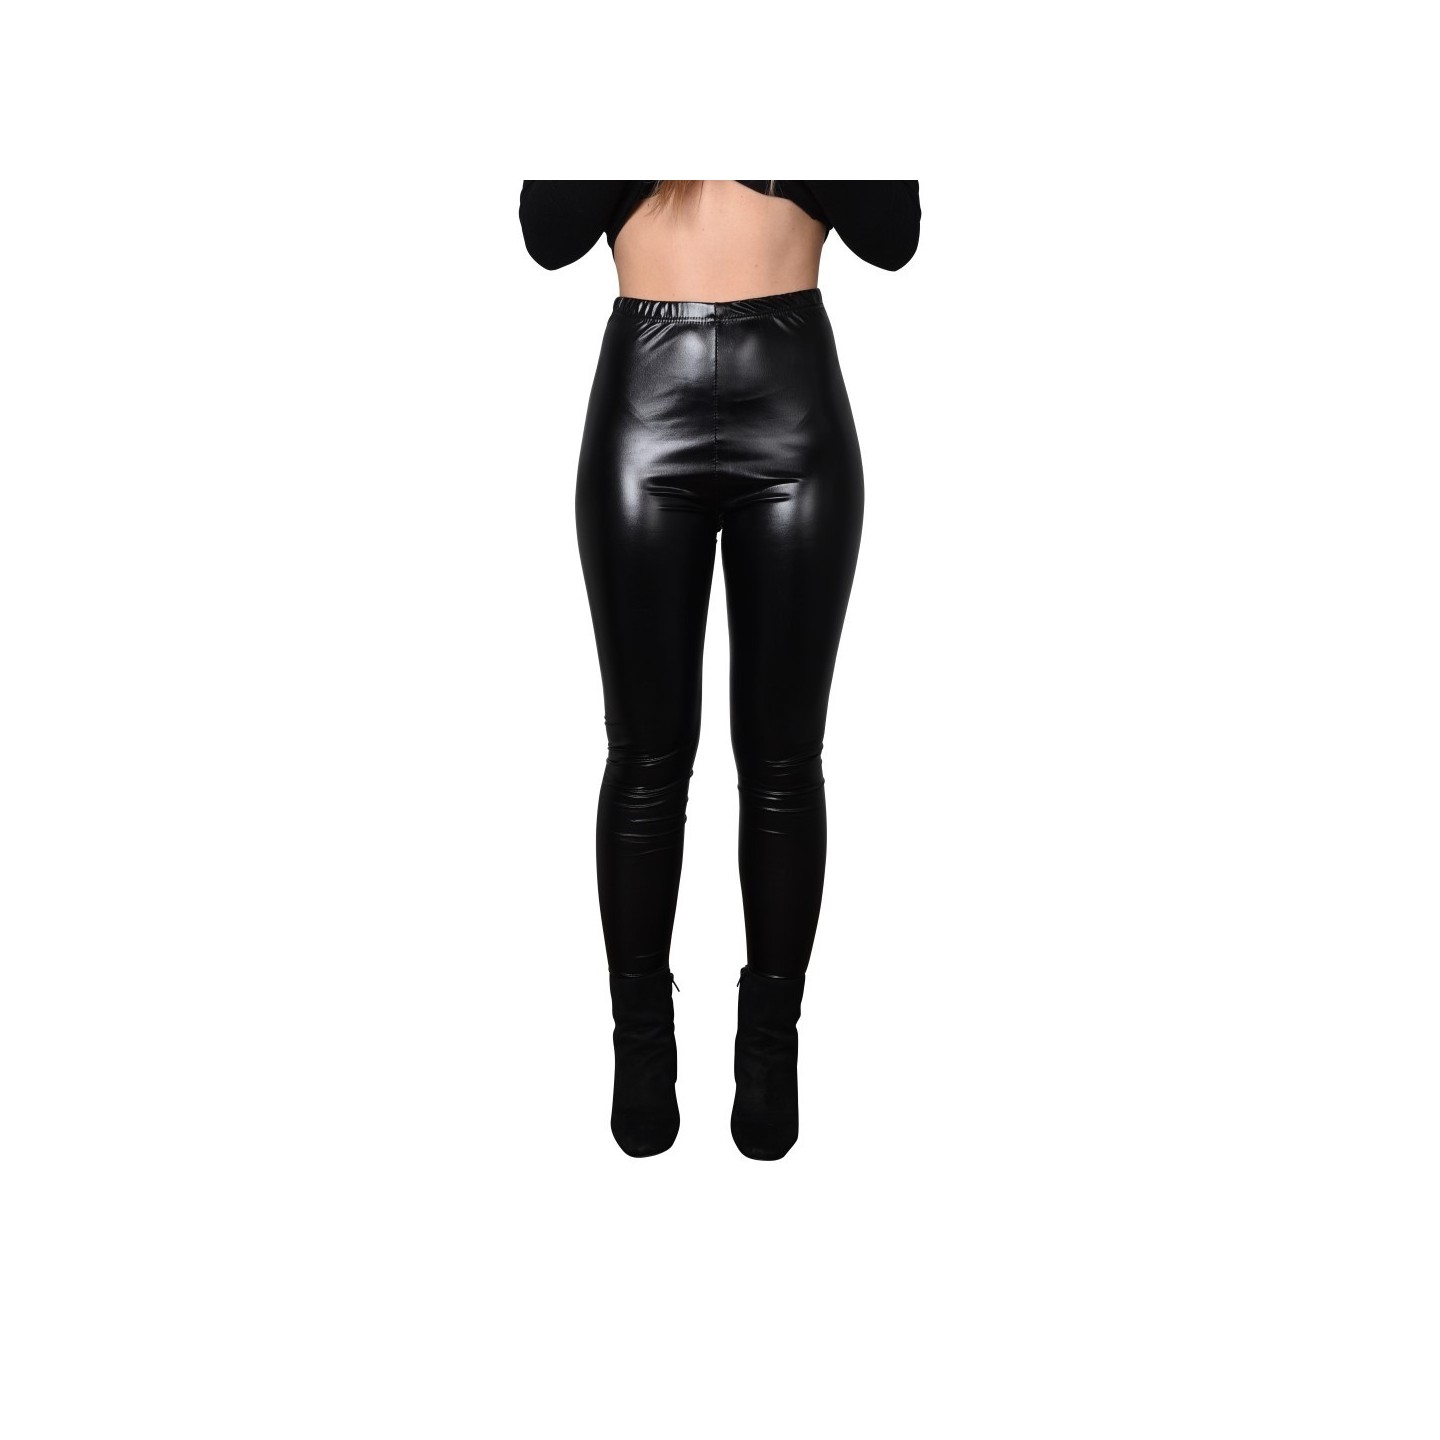 zwarte metallic legging  dames carnaval